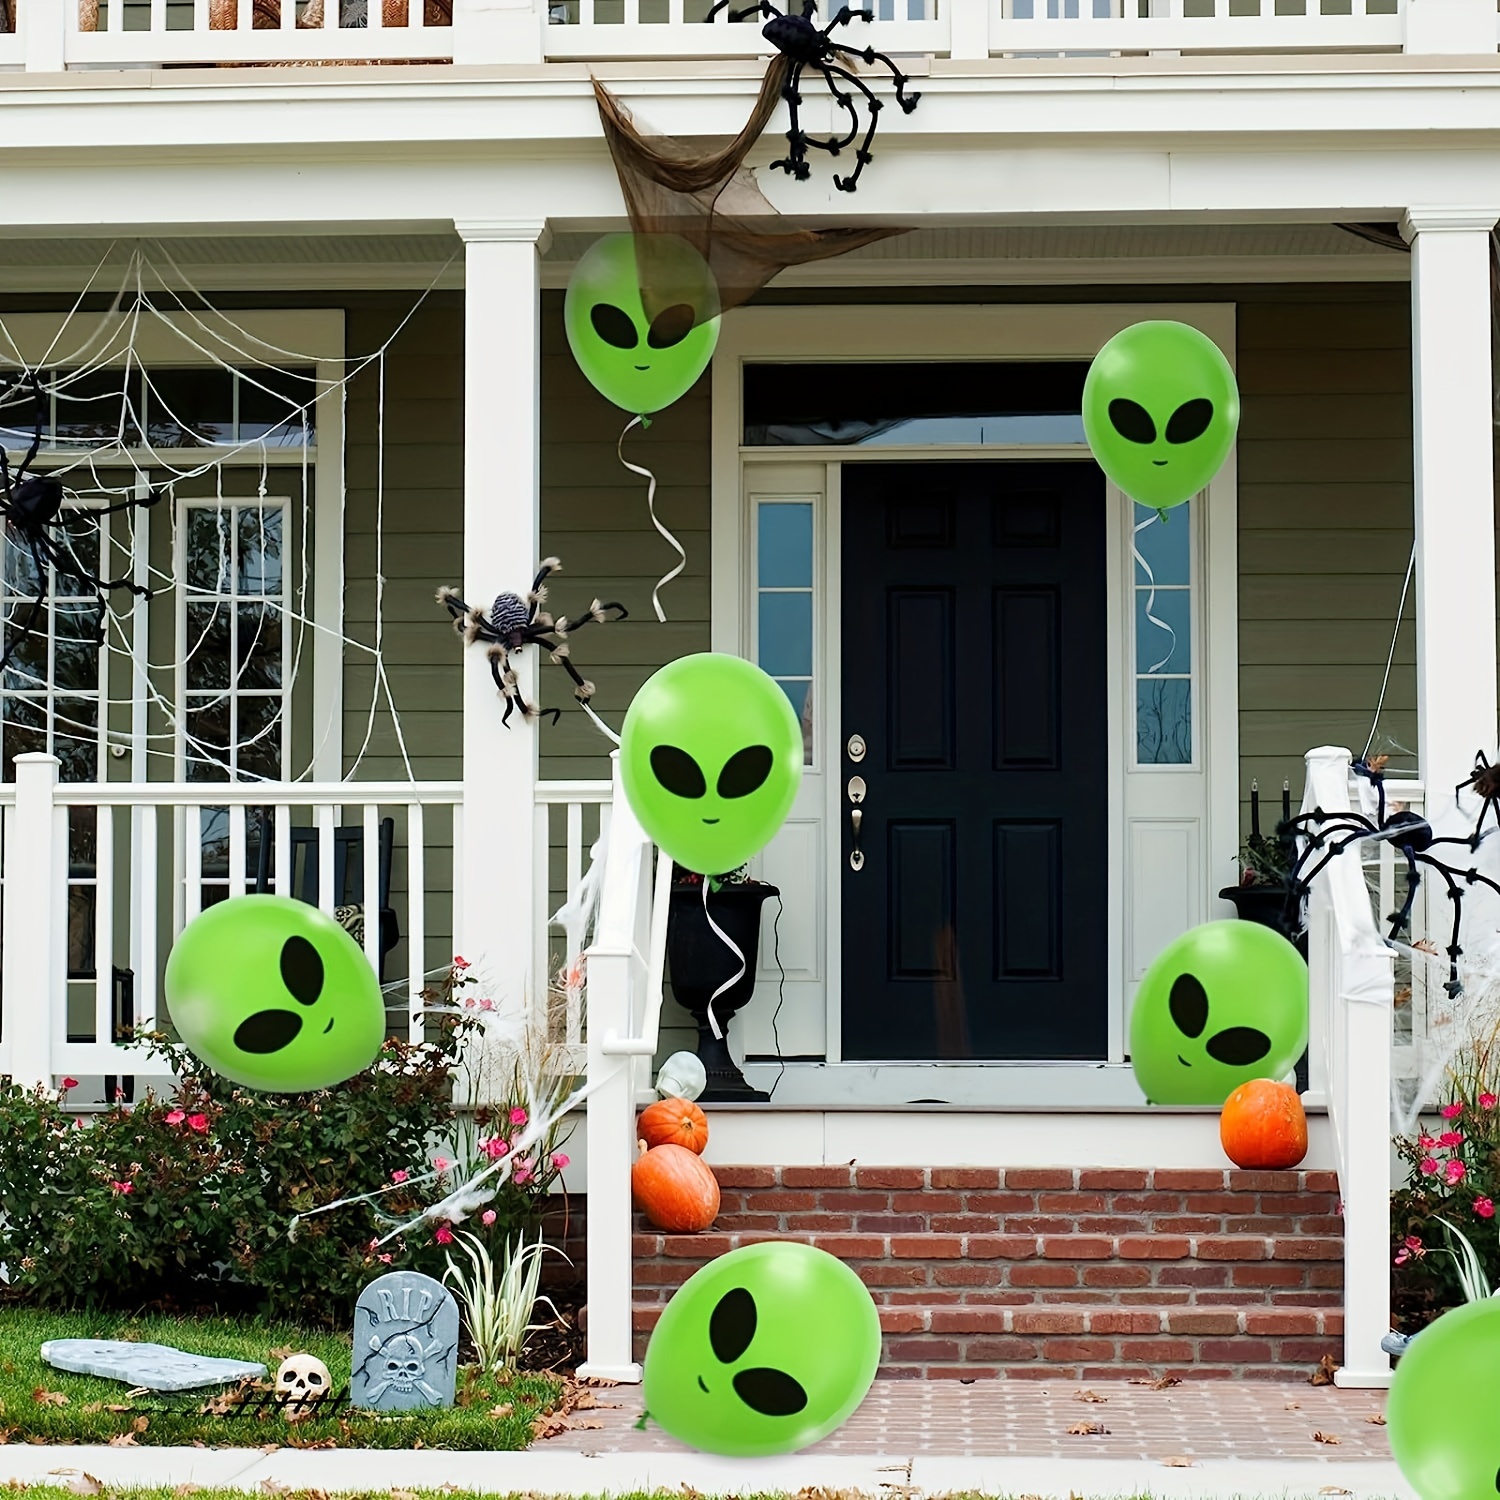 52 globos de alienígena para decoración de alienígenas, suministros  inflables para fiestas de extraterrestres, incluye 4 piezas de accesorios  de